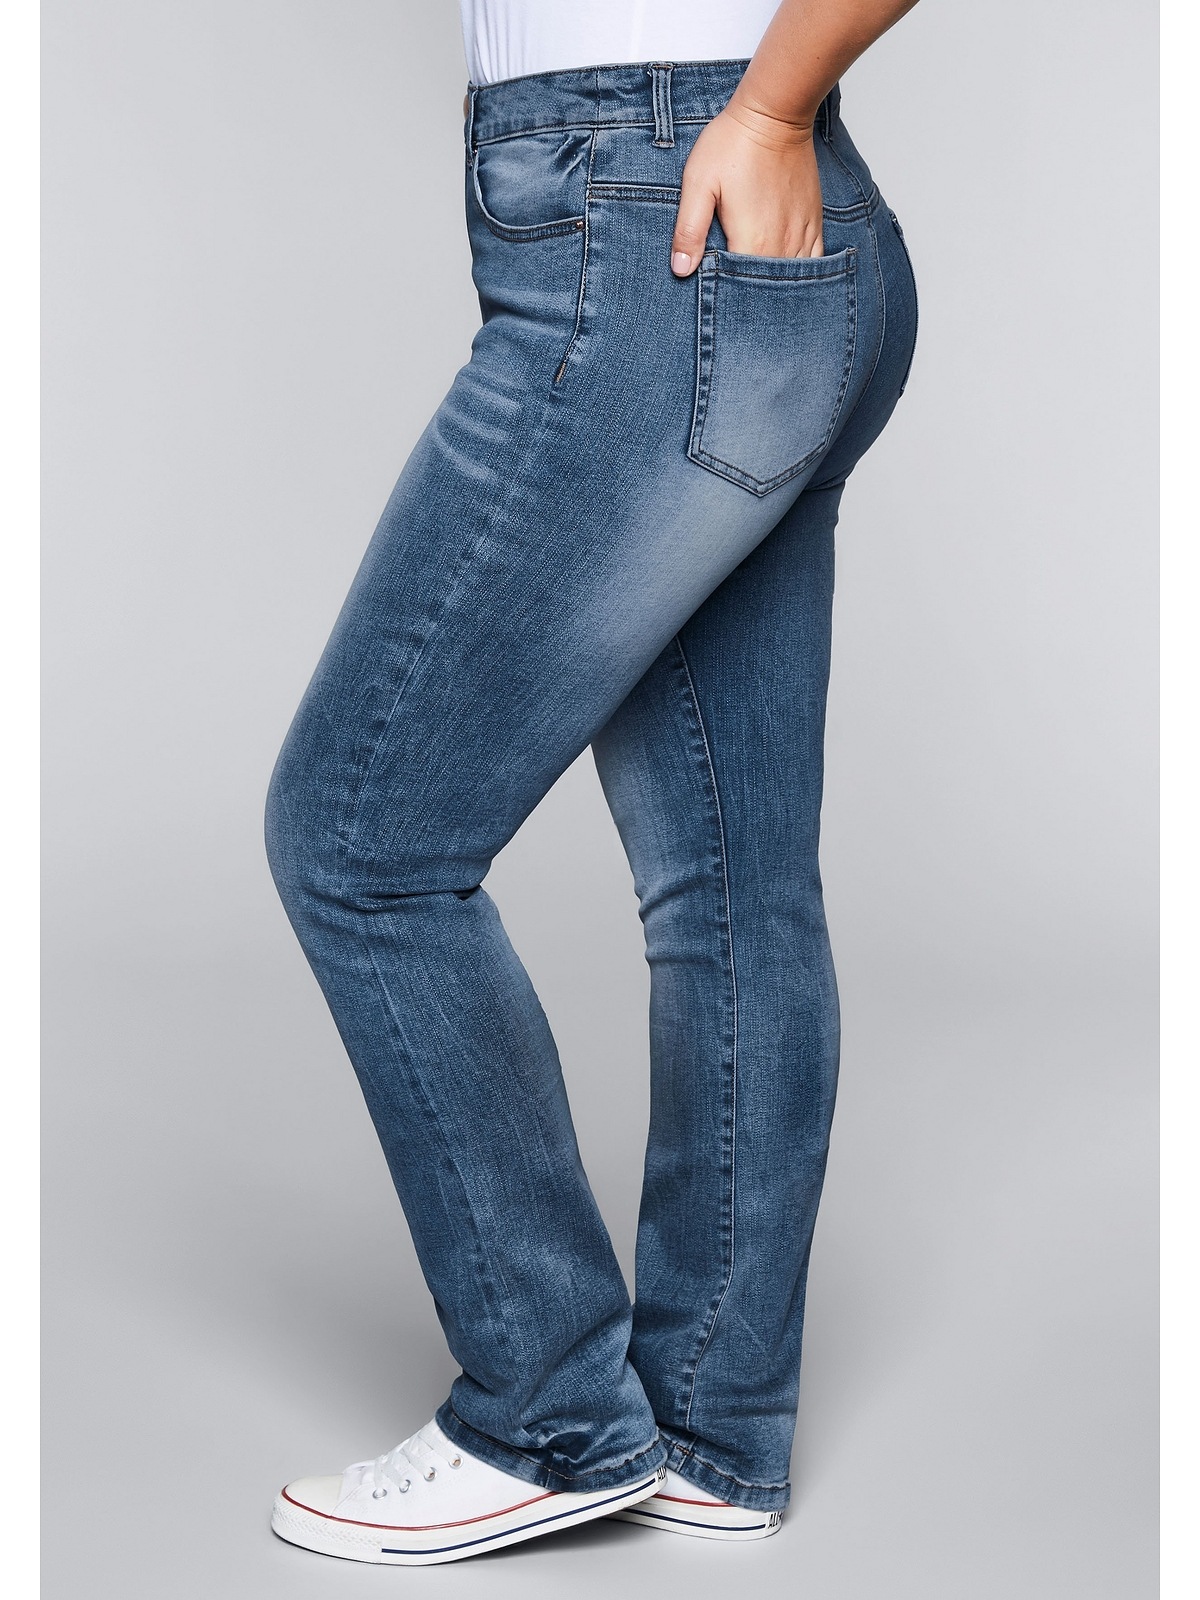 Gerade mit Jeans Bodyforming-Effekt bestellen »Große Sheego Größen«,